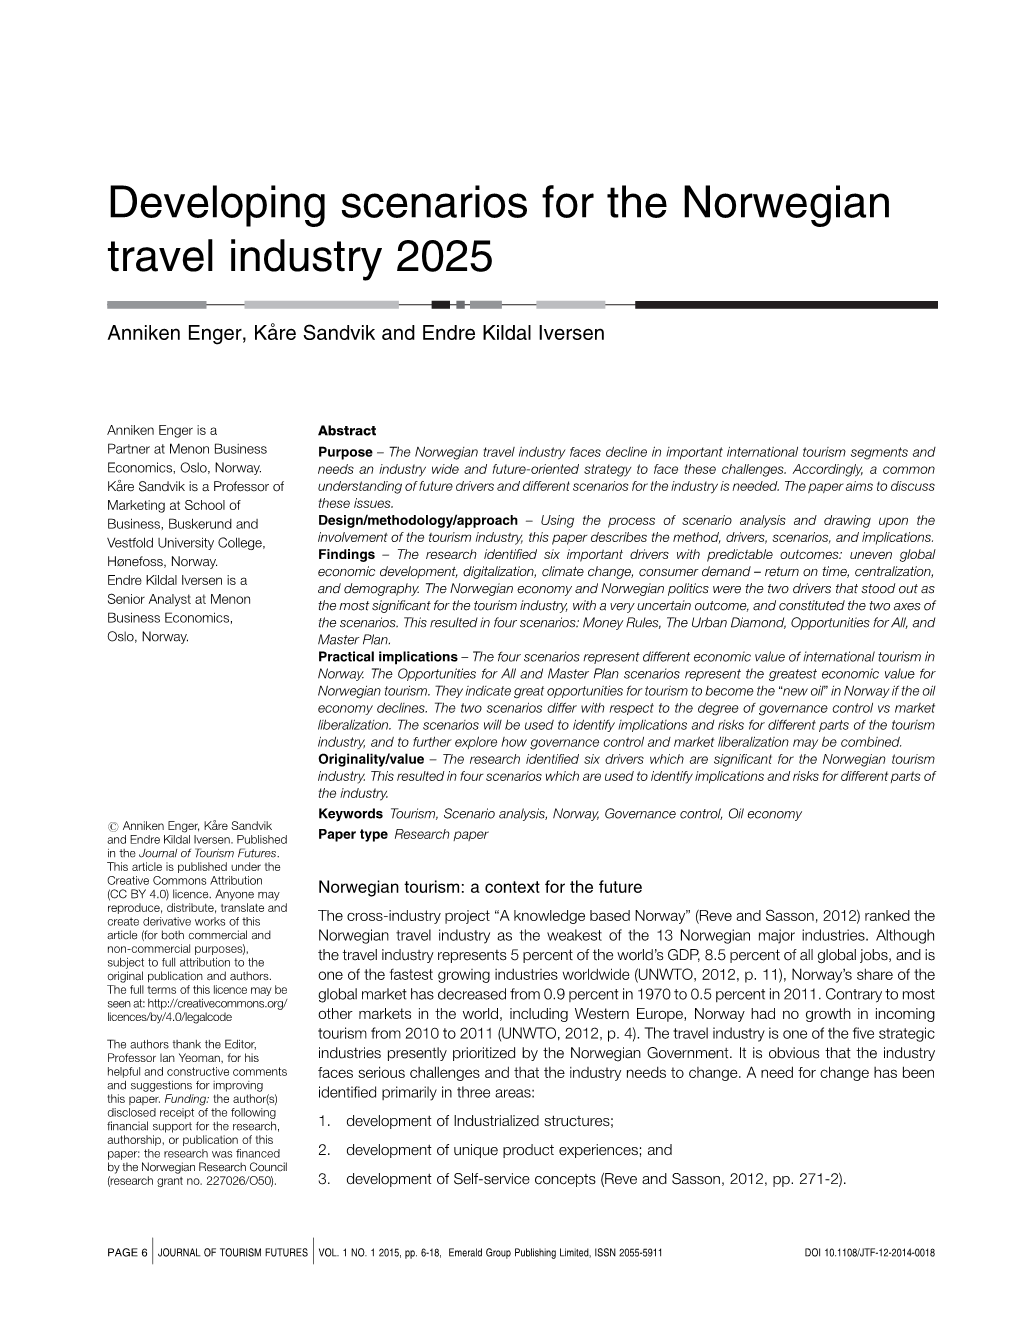 Developing Scenarios for the Norwegian Travel Industry 2025